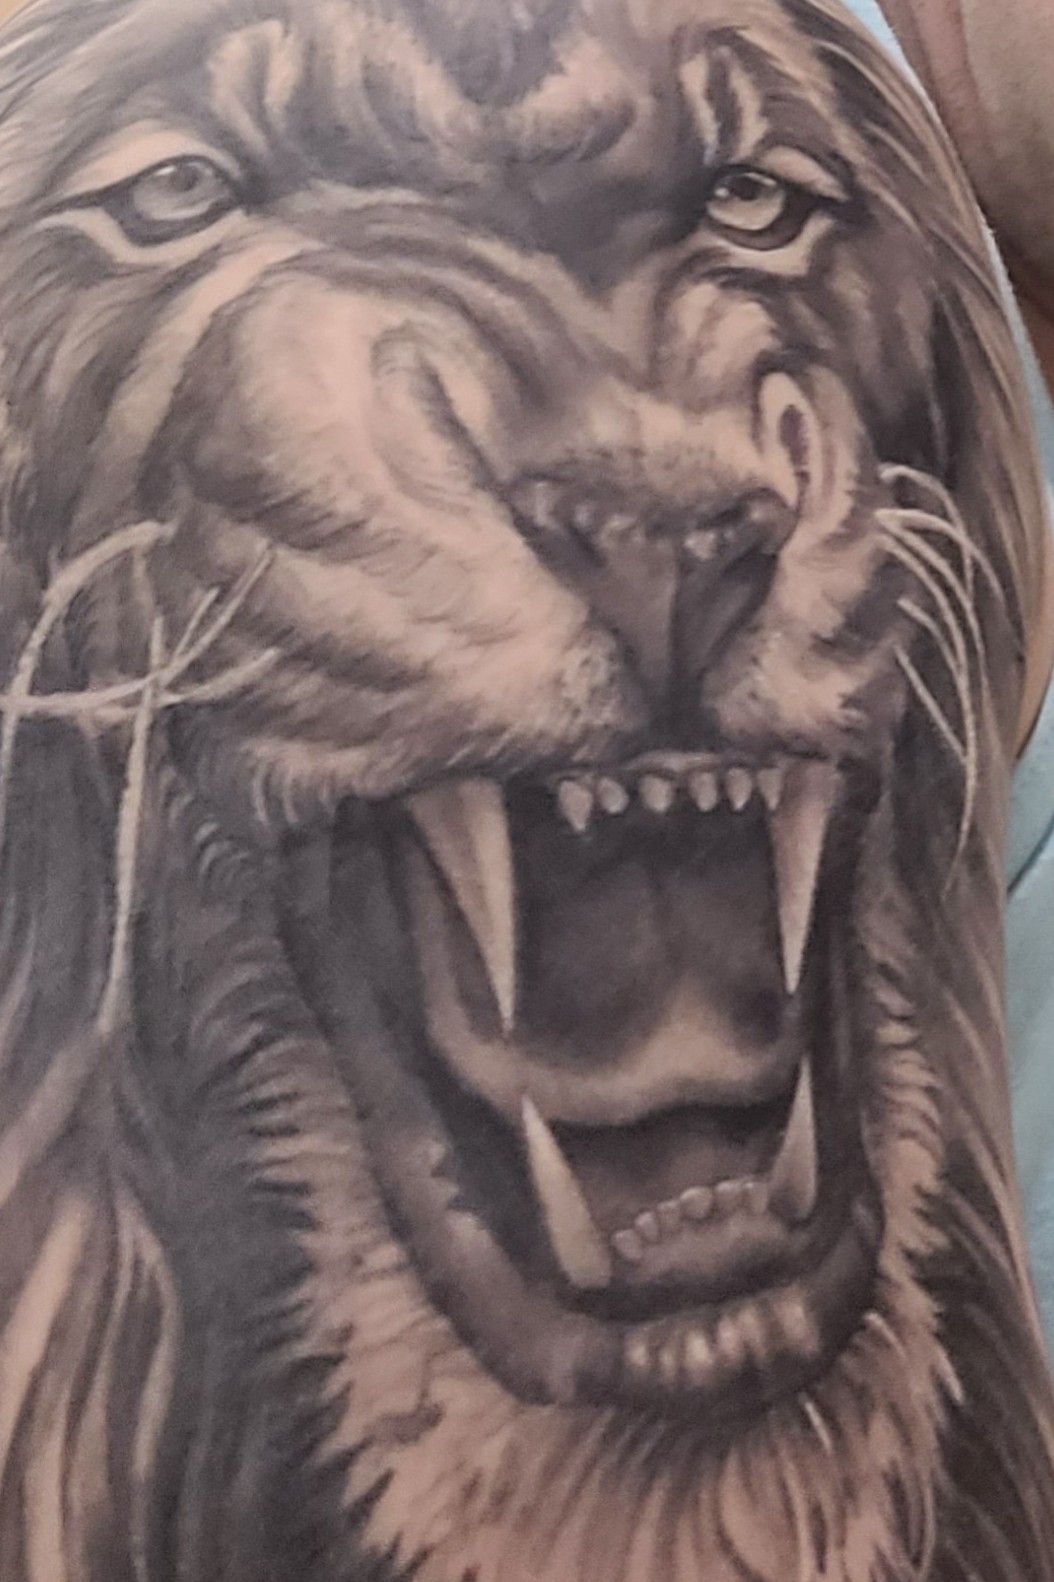 Roaring Lion Tattoo, Best Tattoo Artist in India - Manjeet Tattooz